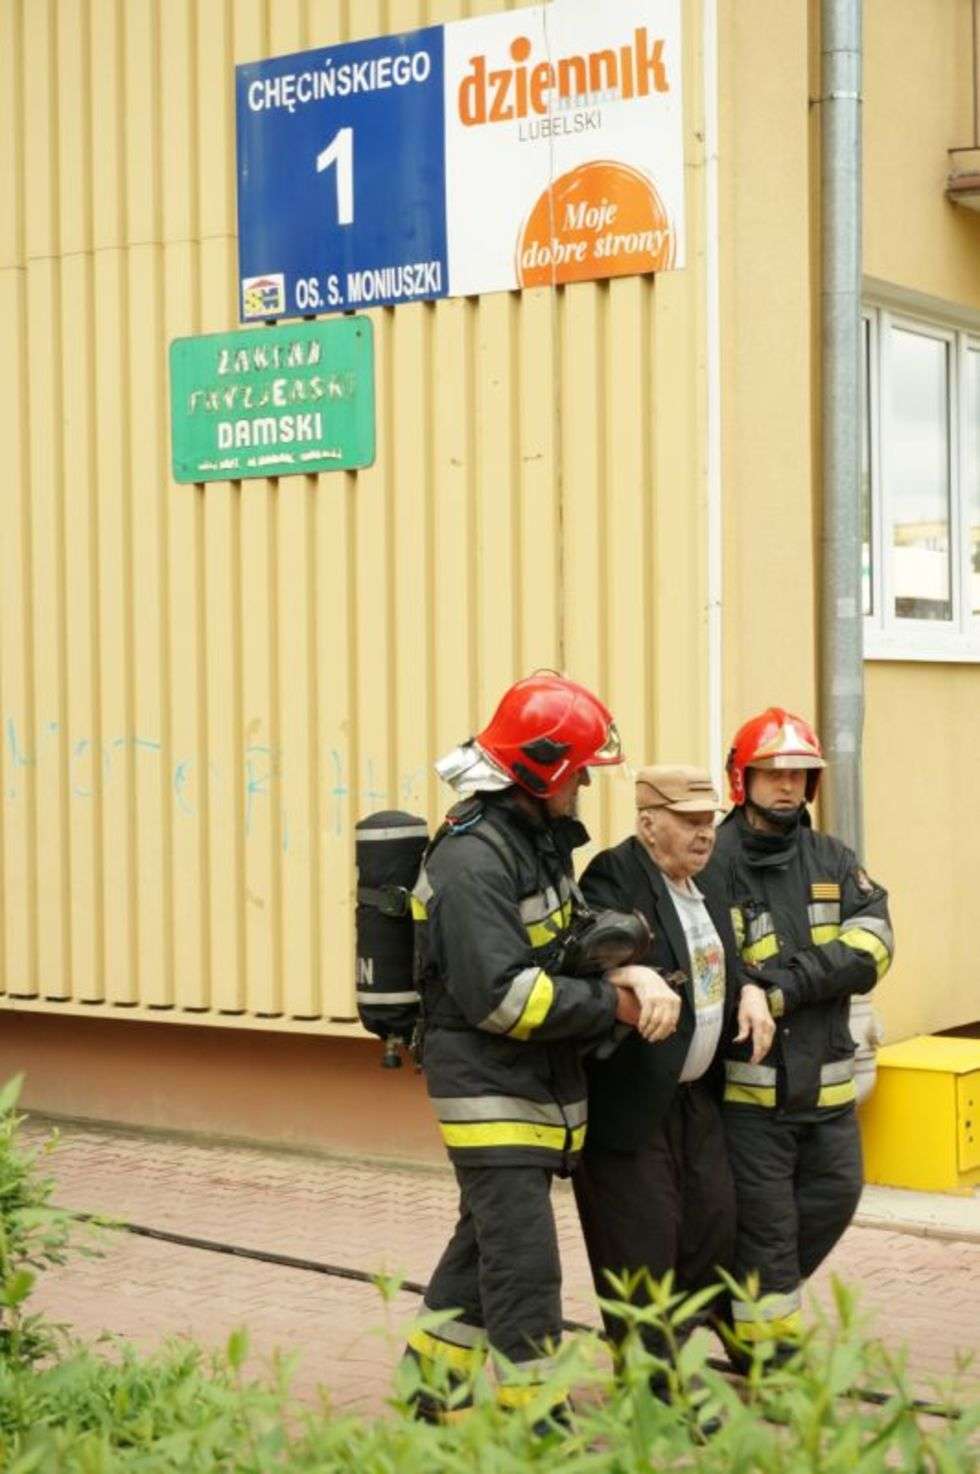  Mieszkańcy zauważyli pożar minutę przed godz. 15. – Winda zapaliła się na czwartym piętrze w wieżowcu przy ul. Chęcińskiego – relacjonuje Michał Badach, rzecznik Komendy Miejskiej Państwowej Straży Pożarnej w Lublinie. – W budynku było bardzo dużo dymu. Z tego powodu ewakuowani zostali lokatorzy wszystkich mieszkań od czwartego piętra wzwyż.<br><br>– Osiem osób zostało przewiezionych do szpitala, siedmiu innym pomoc medyczna została udzielona na miejscu – informował dyżurny straży pod koniec akcji gaśniczej. <br><br>– Zarówno ja, jak i inni poszkodowani mamy objawy podtrucia dymem,Niektórym z nas ratownicy musieli podawać tlen – mówił nam jeden z mieszkańców bloku, czekający na transport do szpitala.<br><br>
Już po ugaszeniu ognia strażacy przeszukiwali wieżowiec mieszkanie po mieszkaniu. – Musimy sprawdzić, czy w którymś z lokali nie został ktoś potrzebujący pomocy – mówi Badach.<br><br>Przyczyna pożaru nie jest na razie znana. Dochodzenie w tej sprawie prowadzi policja. Pożar wybuchł tuż obok bloku, który dwa lata temu był nękany przez pożary. Ogień pojawiał się tam m.in. w skrzynkach z licznikami. Rok później w tym samym budynku ktoś rozpylił w windzie gaz łzawiący.<br><br>W Lublinie najbardziej tragiczny w skutkach pożar windy miał miejsce w 2005 r. w wieżowcu przy ul. Zana. Życie stracił tam 51-letni mężczyzna. W bloku tym obok siebie znajdują się dwie windy. Gdy w jednej z nich pojawił się ogień, automatycznie wyłączyły się obydwie. W tej, w której się nie paliło, jechał człowiek. Utknął w kabinie i śmiertelnie zatruł się dymem.<br><br>– To było podpalenie – mówi Jan Gąbka, prezes Lubelskiej Spółdzielni Mieszkaniowej. To do LSM należy wieżowiec, w którym doszło do pożaru. – To nie był jedyny taki przypadek w tamtym czasie. W końcu złapali tego podpalacza, wtedy pożary ustały. Na razie mamy spokój. Ale nadal mamy problemy z dewastacją dźwigów. Dość często zdarza się przypalanie przycisków, a nawet kradzieże żarówek i różnych elementów z metalu.<br><br>Podpalacze mają różne pomysły. Jesienią do krakowskiego akademika Babilon ktoś wstawił fotel na kółkach i podpalił go. Cztery lata temu w Szczecinie ktoś podpalił w windzie psa. Zwierzę udało się uratować.